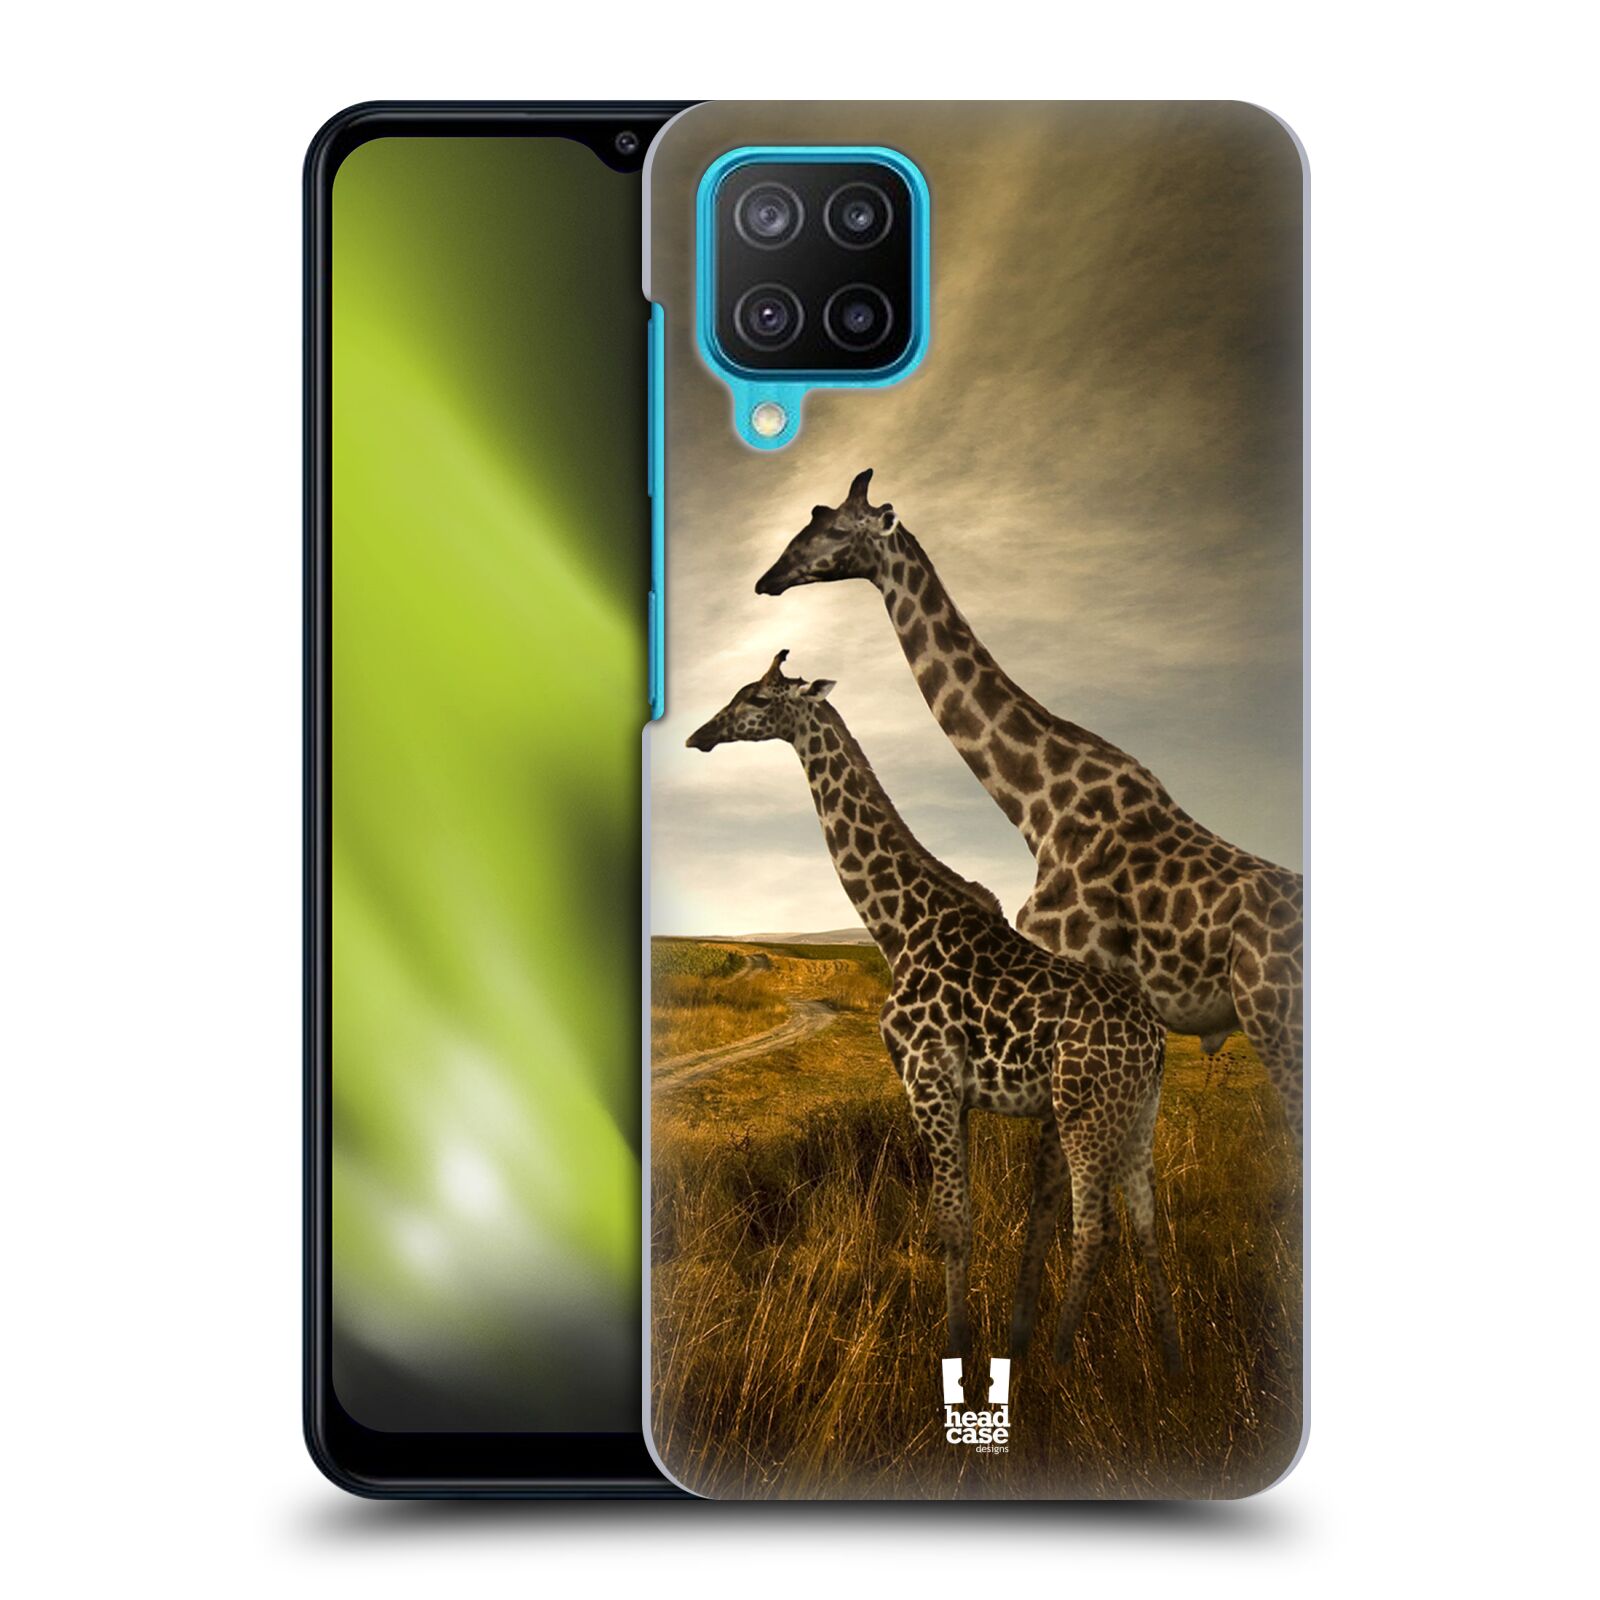 Zadní obal pro mobil Samsung Galaxy M12 - HEAD CASE - Svět zvířat žirafy